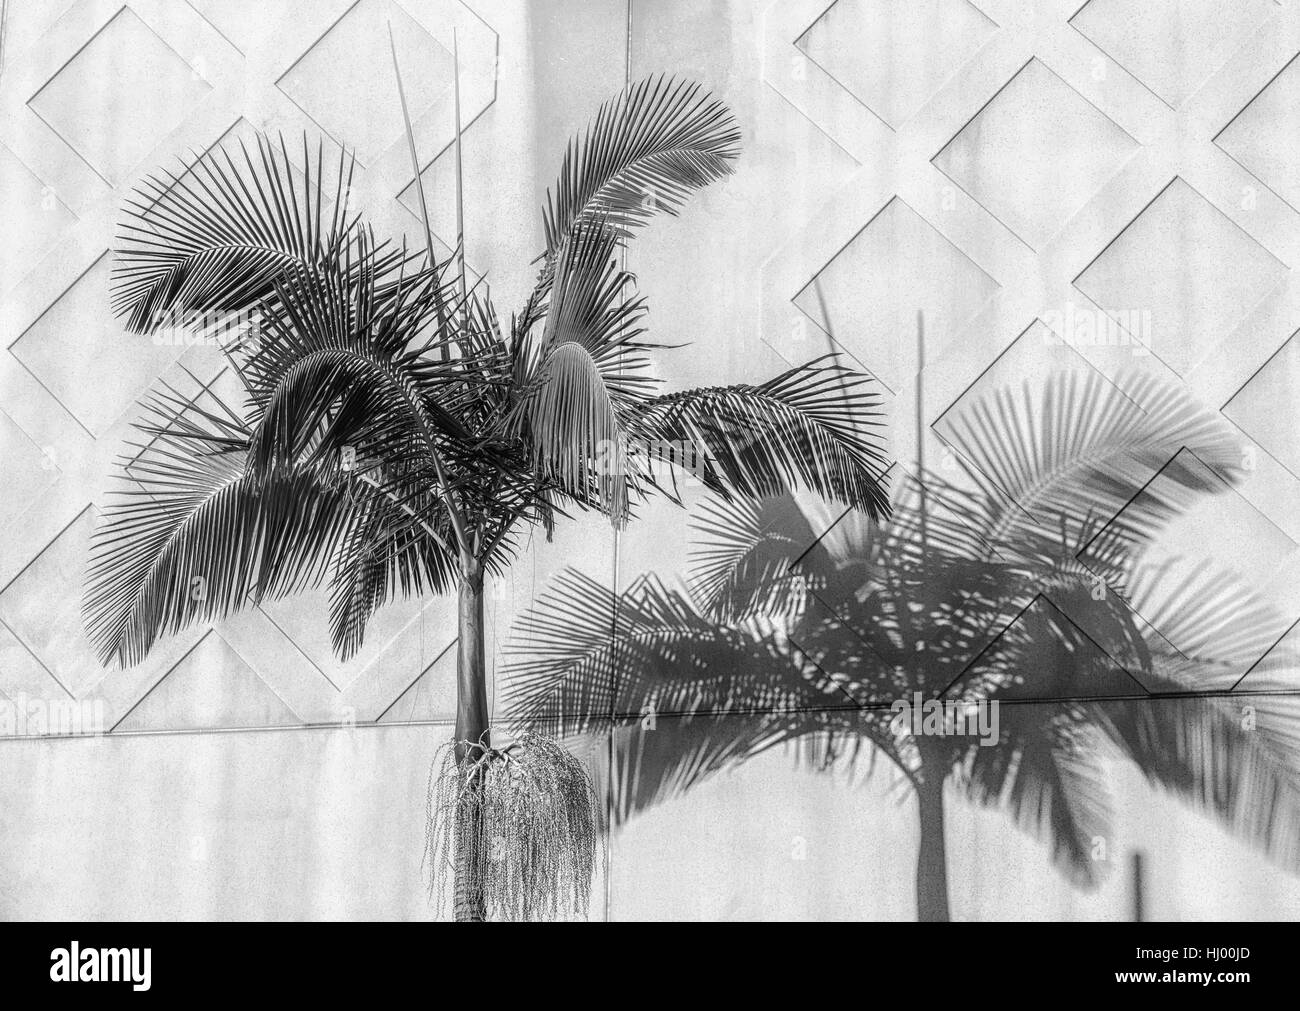 Palmier et ombre projetée contre un mur de béton, géométrie urbaine. Banque D'Images